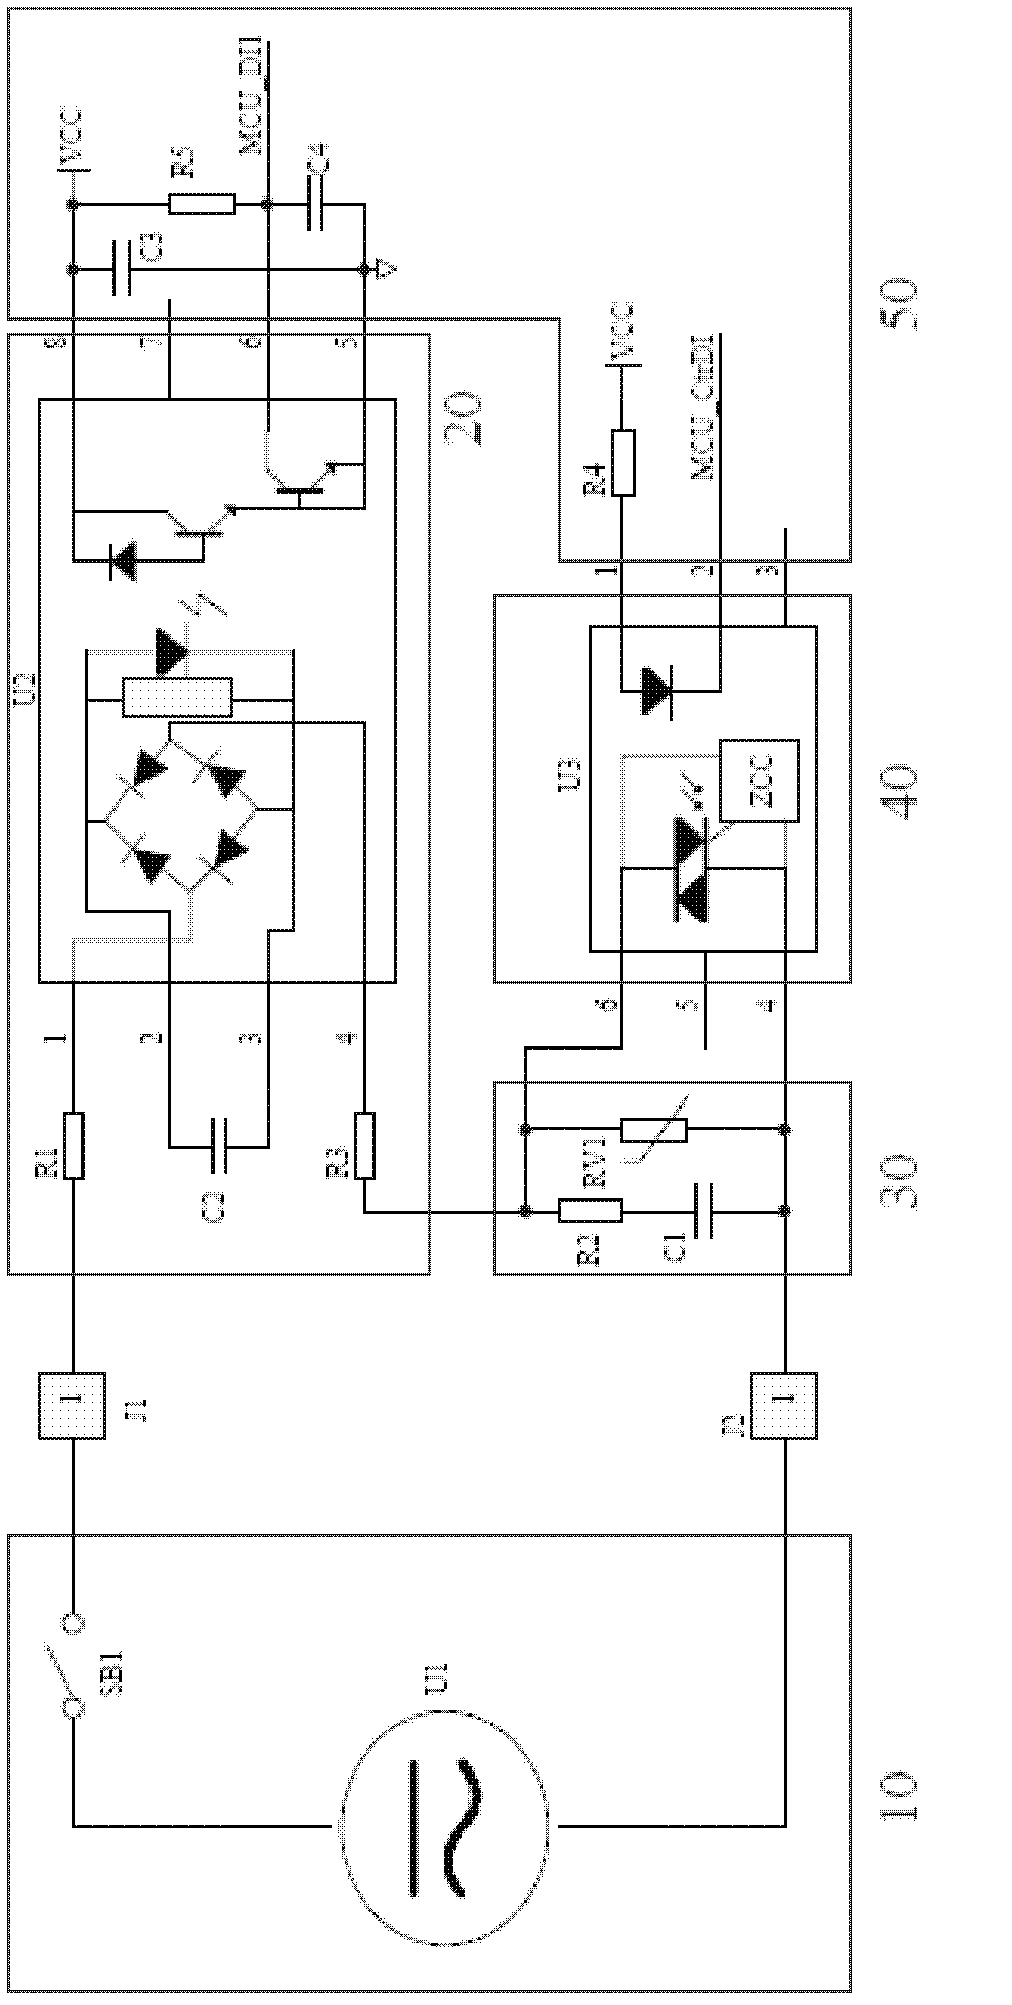 AC and DC digital input circuit